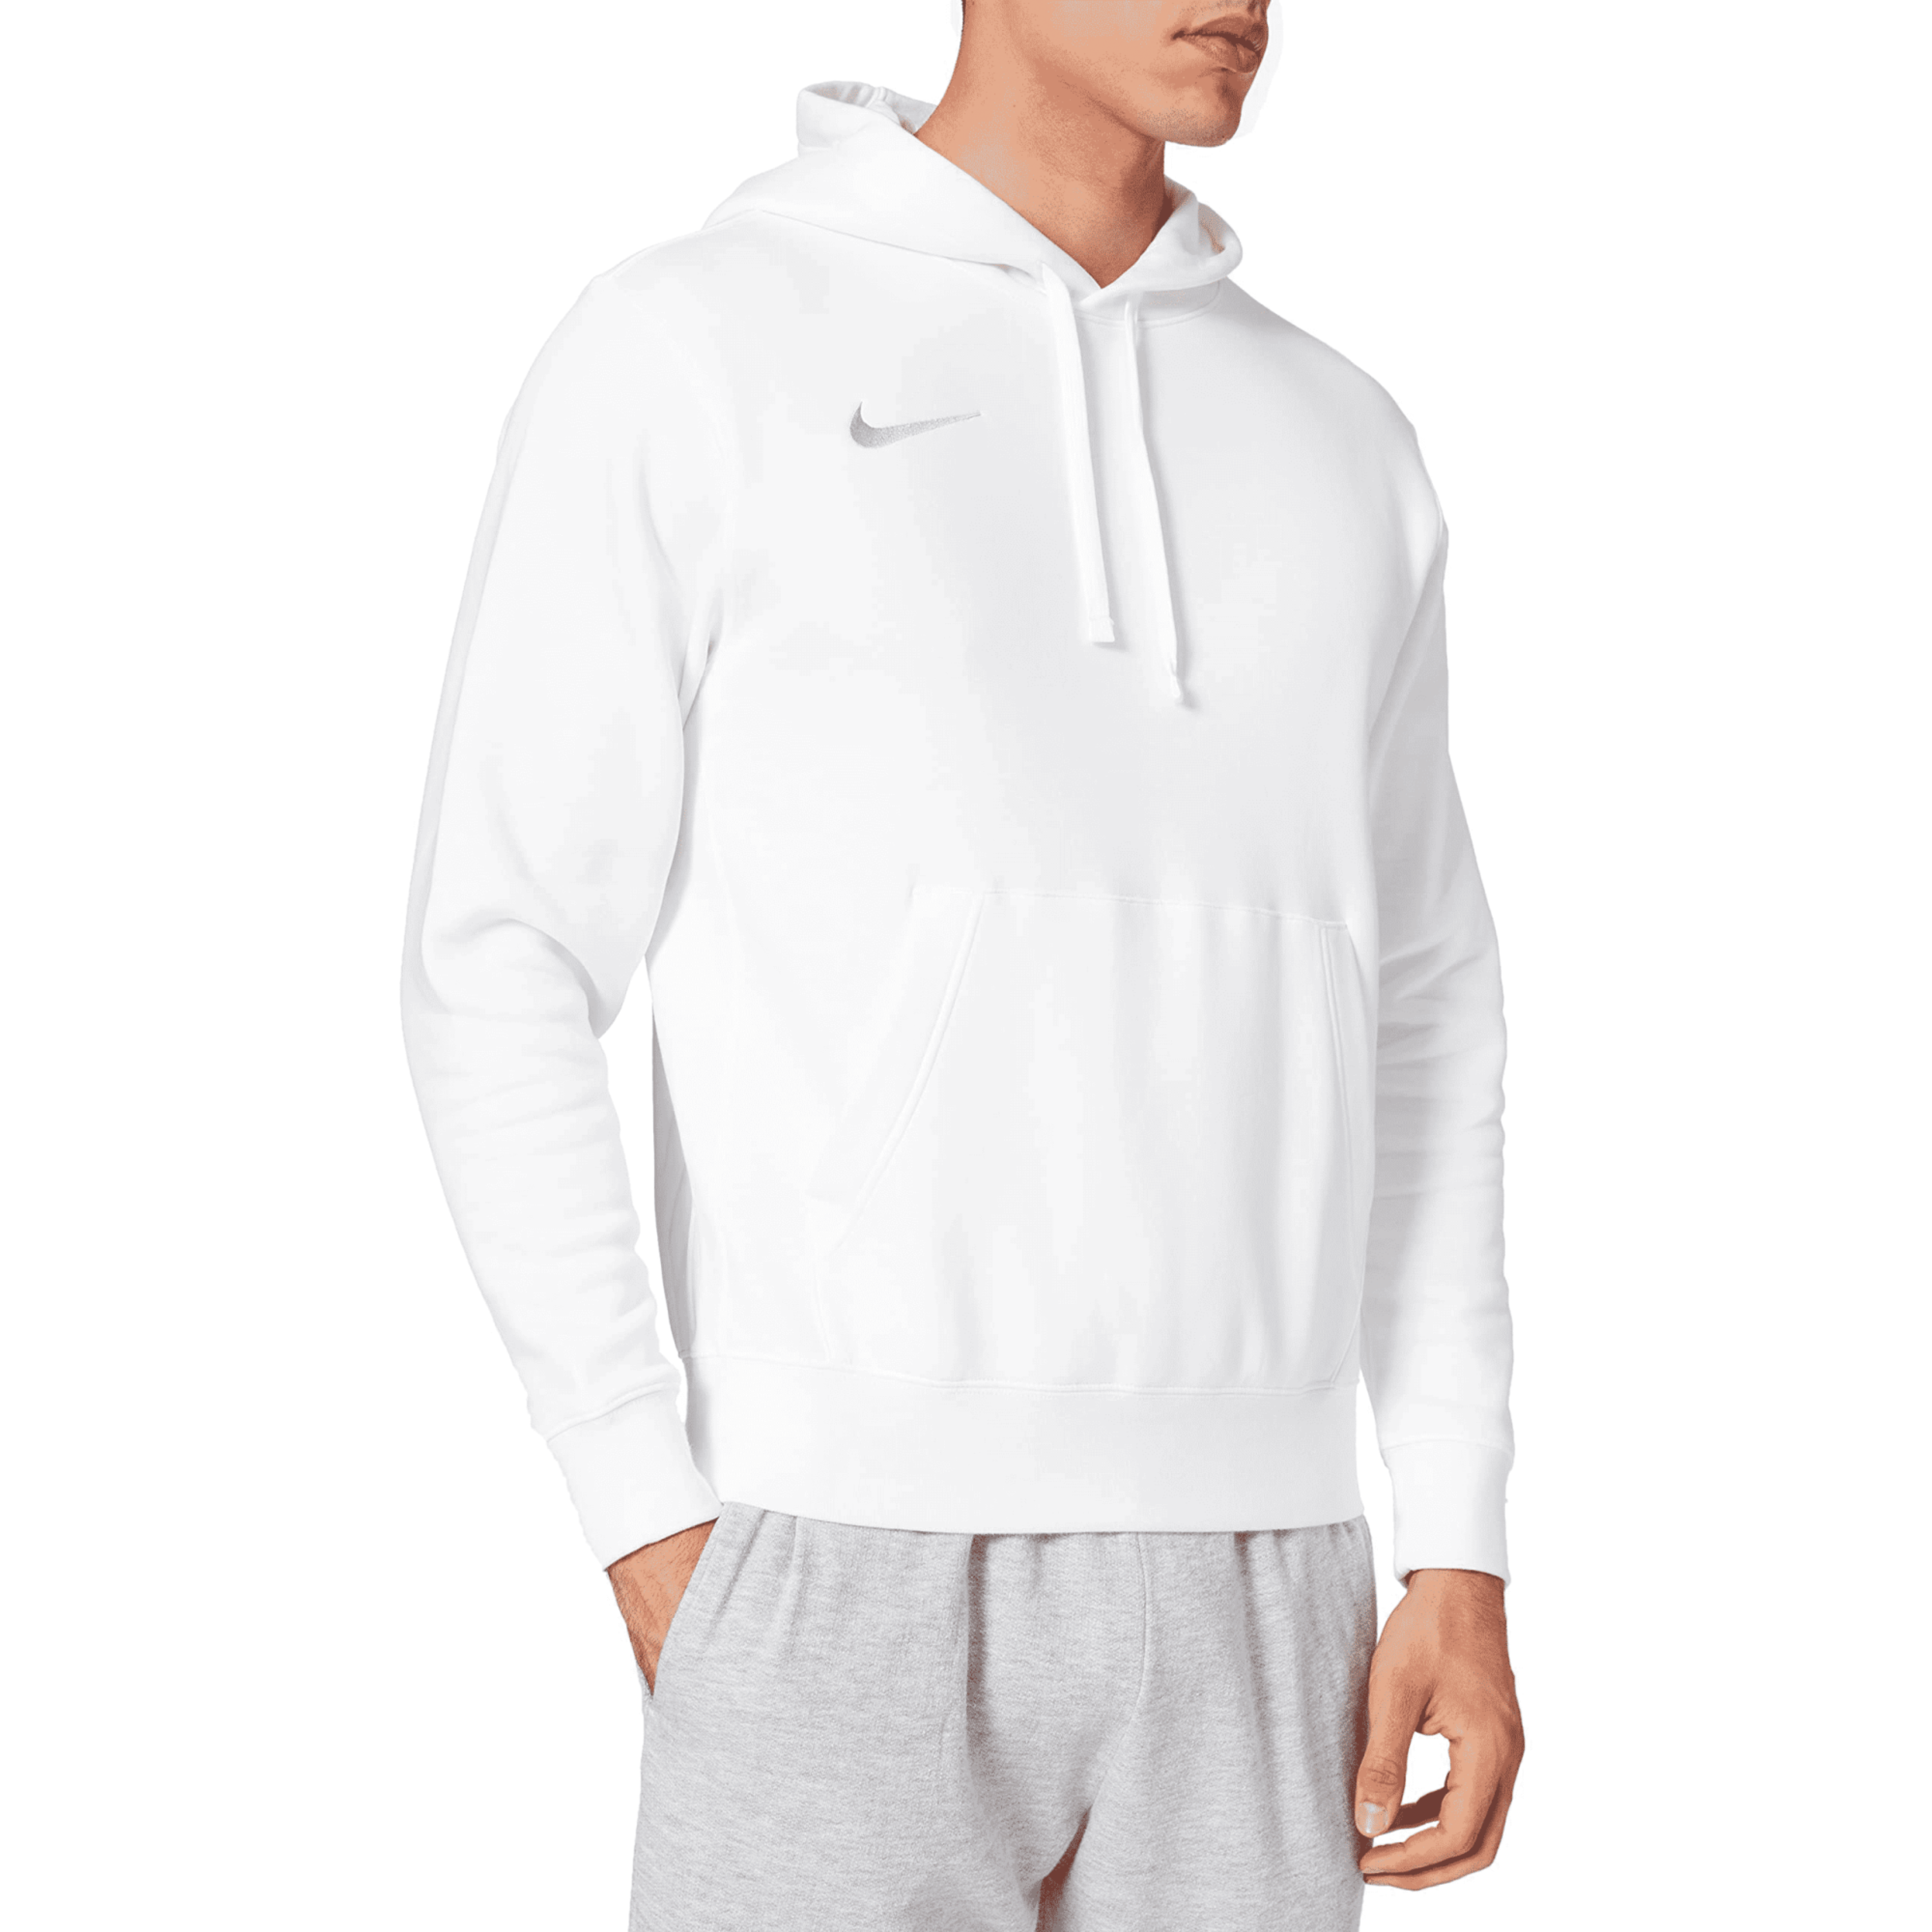 קפוצ'ון לגברים מידה S דגם Nike Team Club 20 - צבע לבן